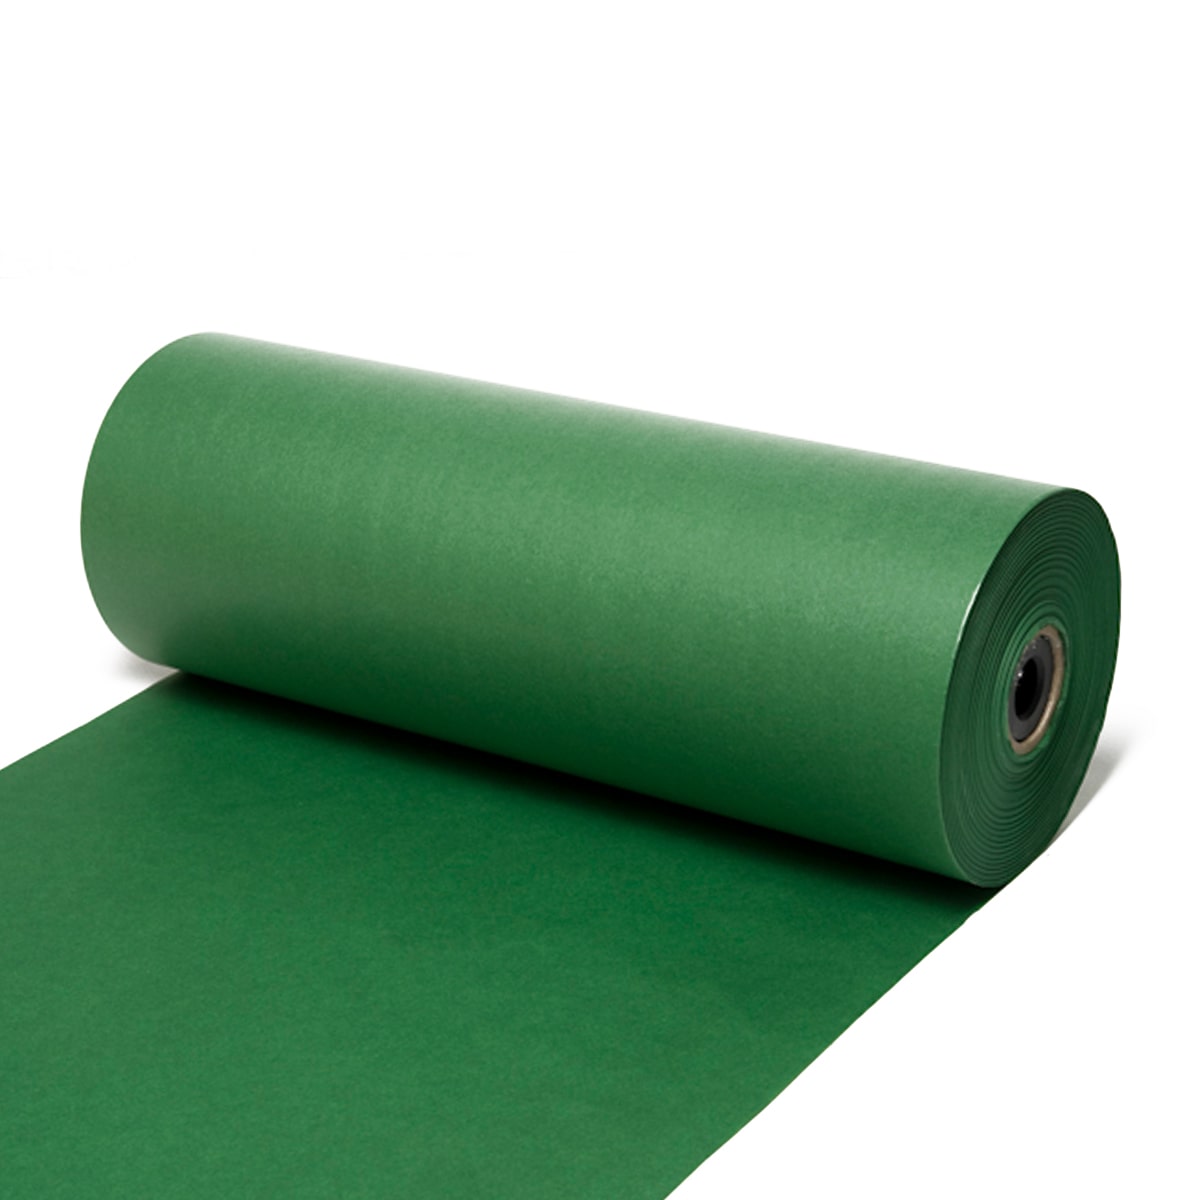 Seidenpapier Tannengrün, 50 cm breit, 500 Meter / Rolle